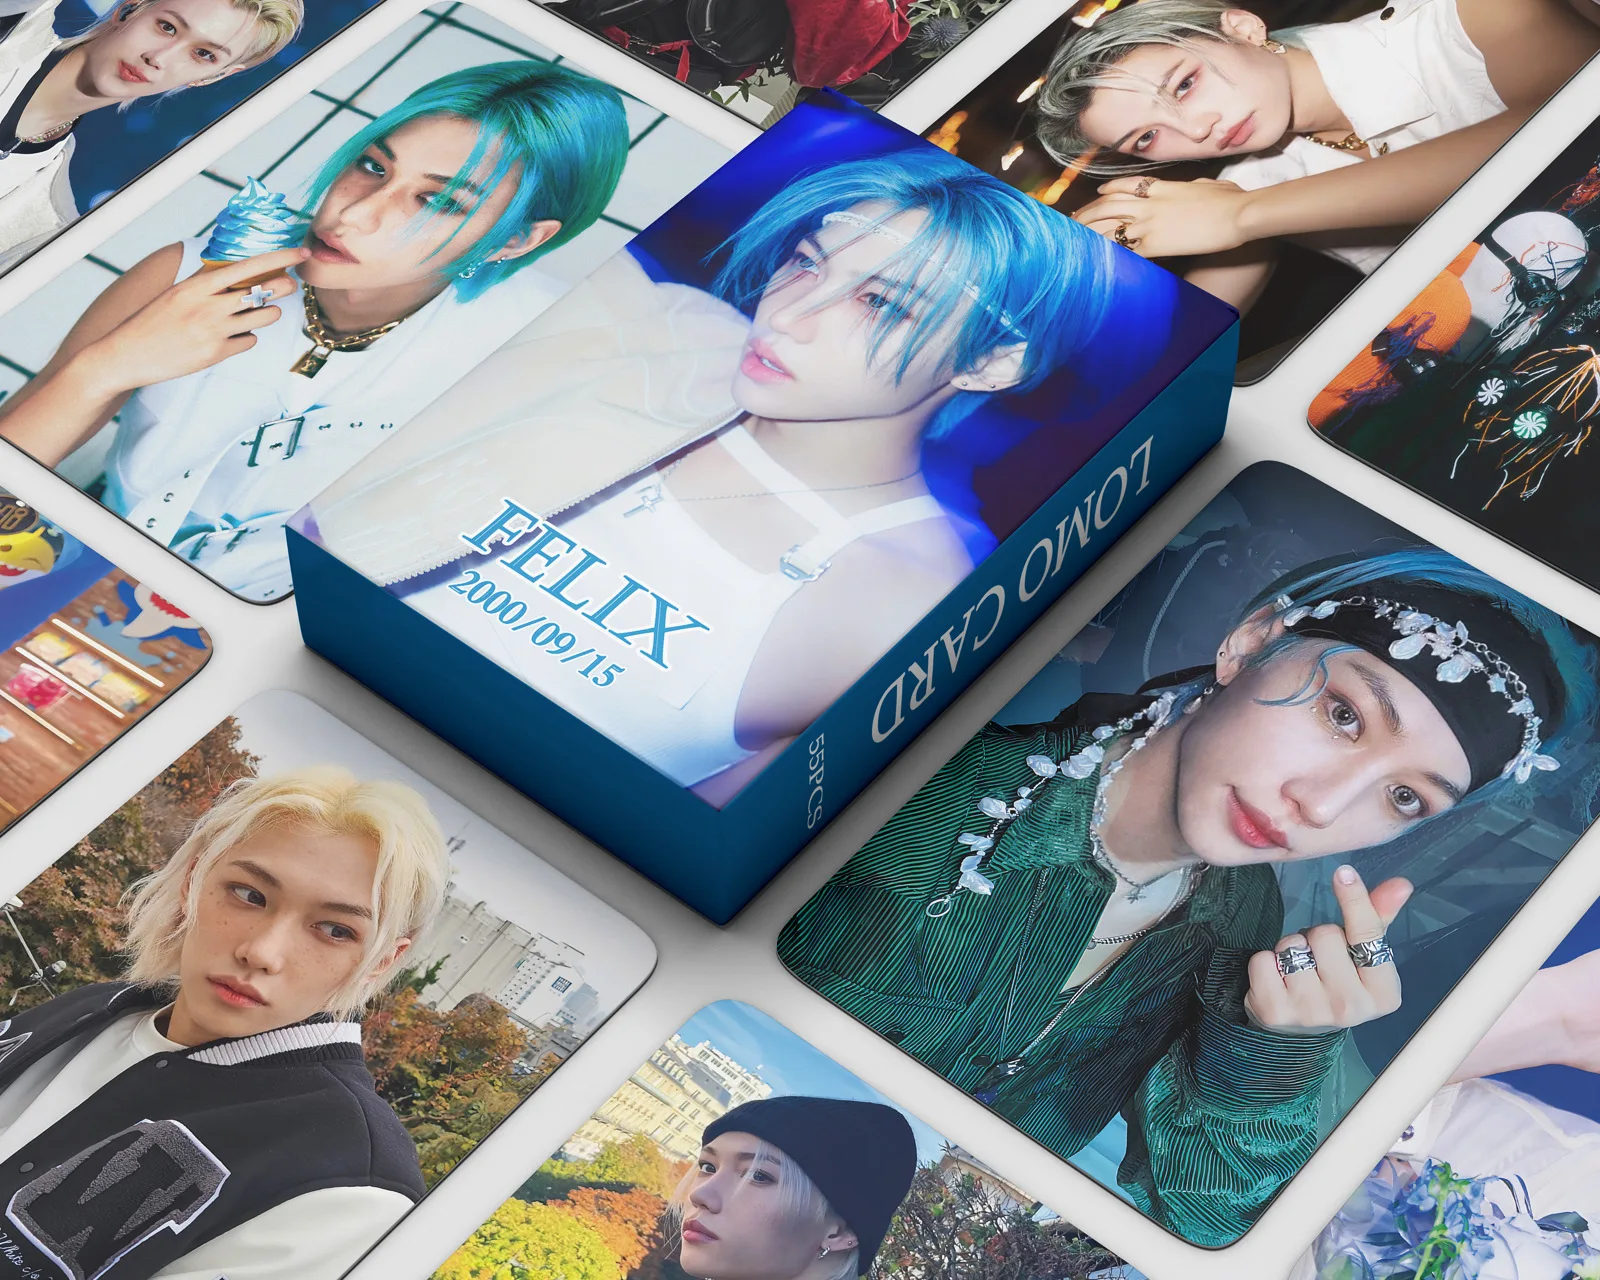 55 Adet/kutu Kpop Kaçak Çocuk Albümü 5 Yıldız 3D altın LAYOVER YEDİ Photocards Jungkook Lomo Kartları Felix Hyunjin 5 yıldızlı Aksesuarları